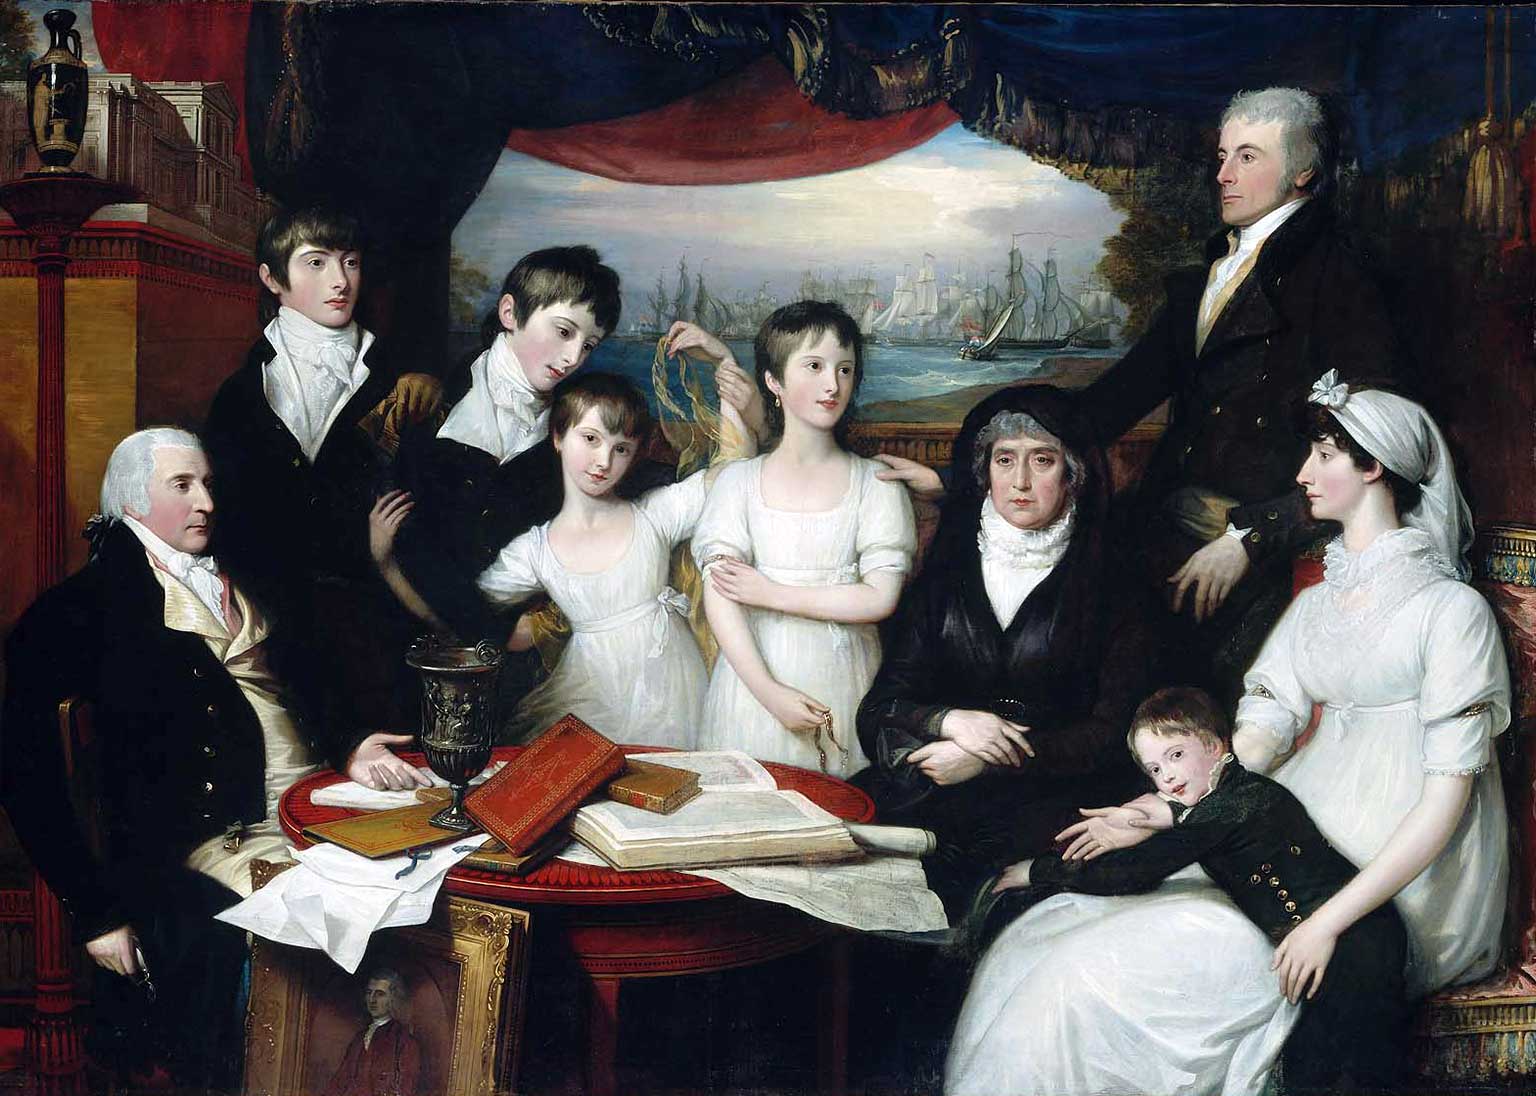 De familie Hope van Sydenham, Kent, schilderij uit 1804 van Benjamin West